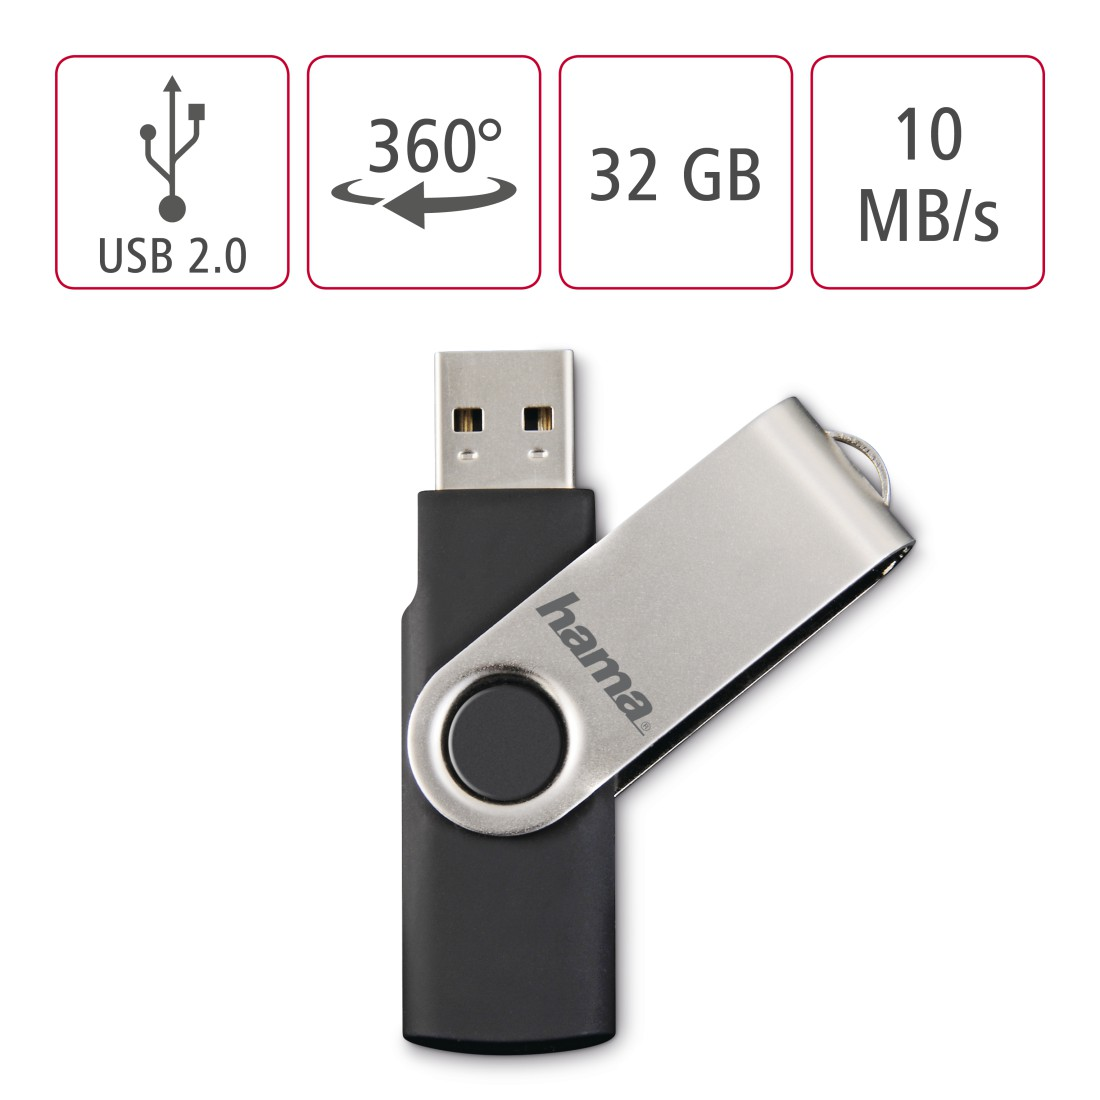 HAMA MB/s, USB-Stick, GB, 10 32 Schwarz/Silber Rotate